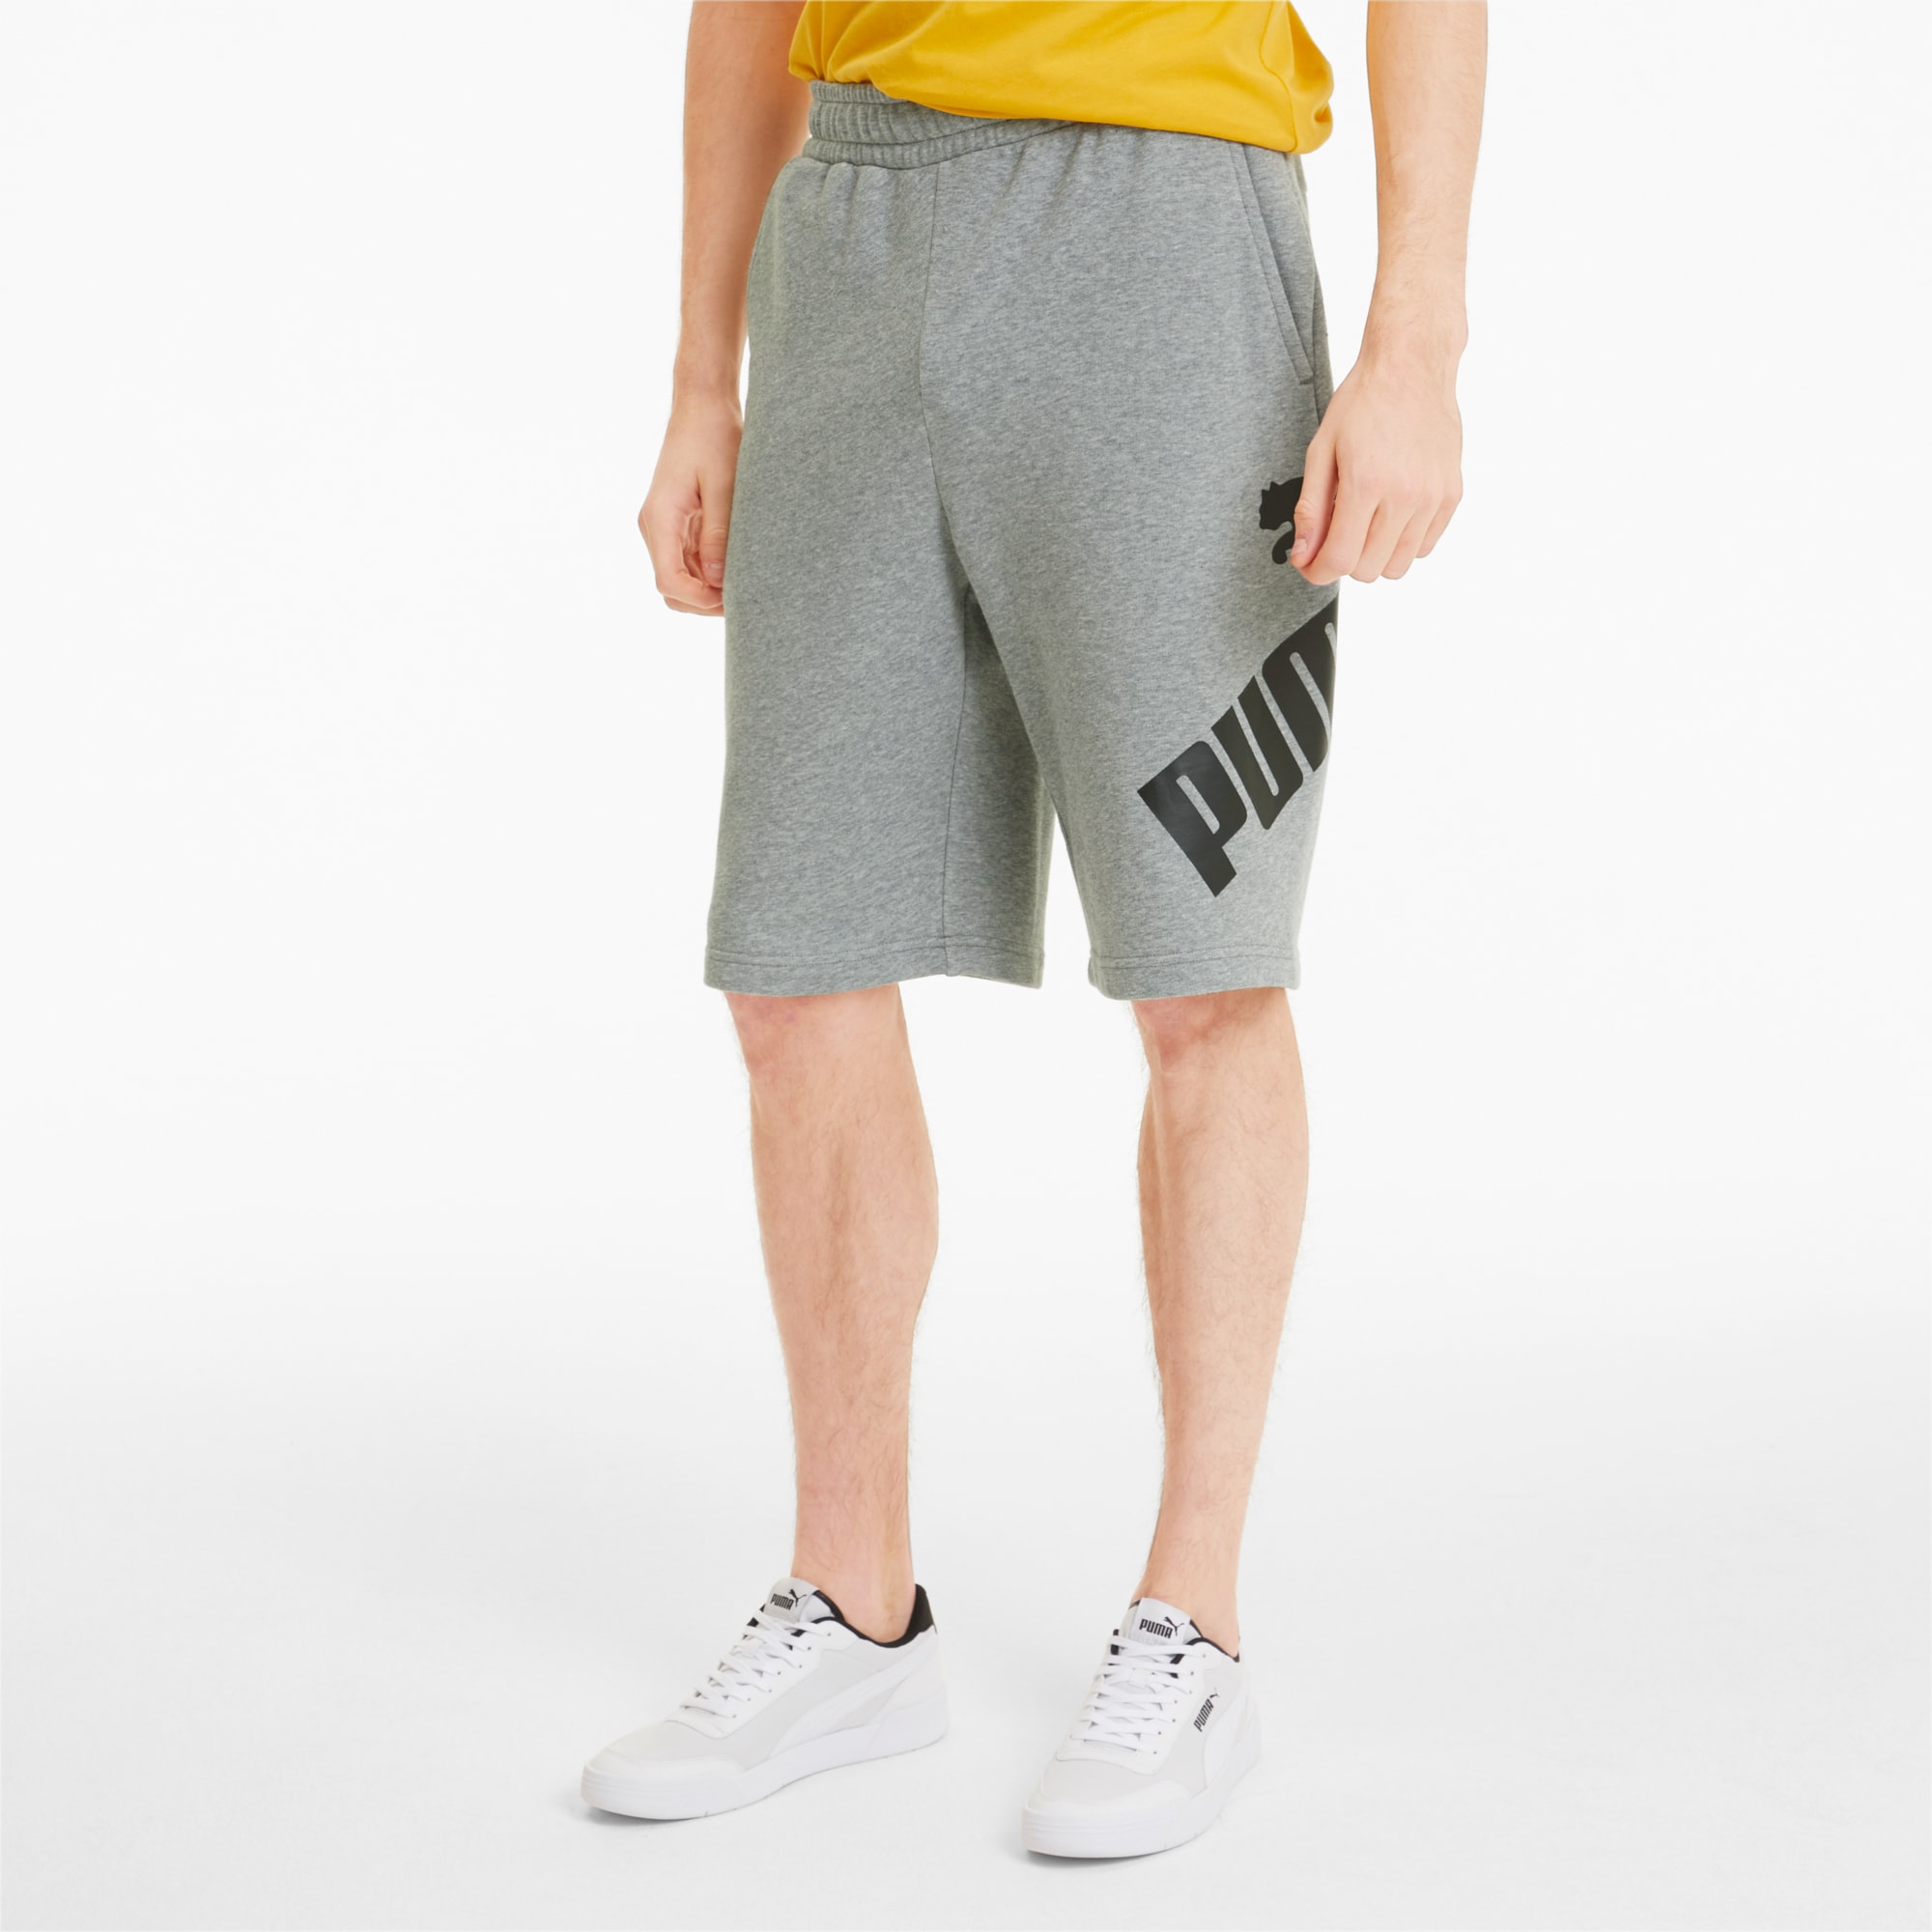 gray puma shorts